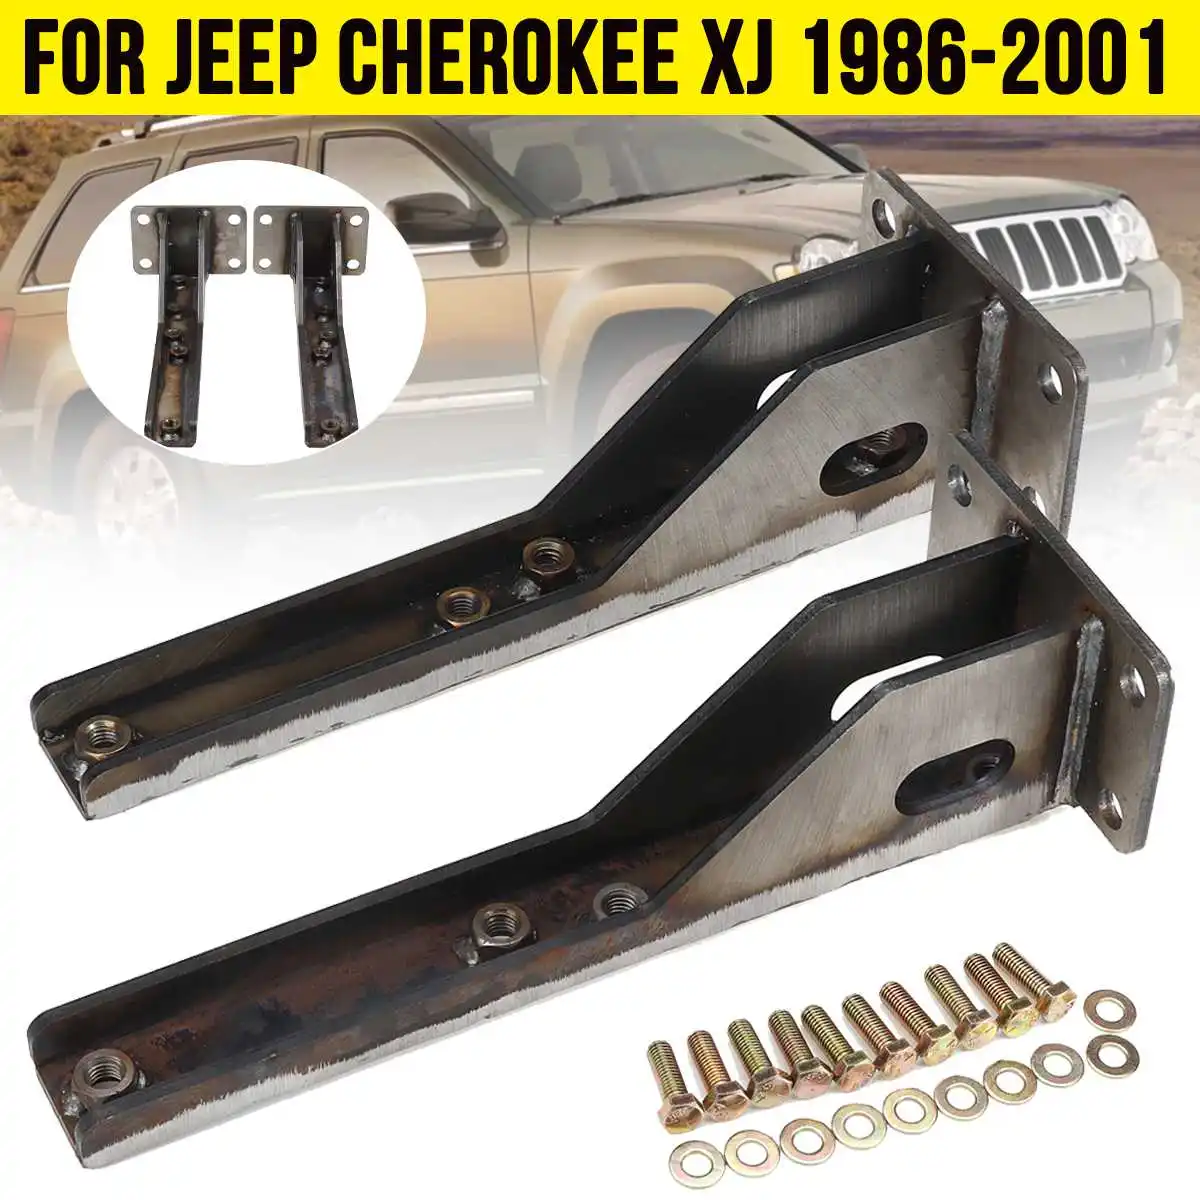 

2ocs Rear Bumper Brackets for Jeep Cherokee XJ 1986-2001